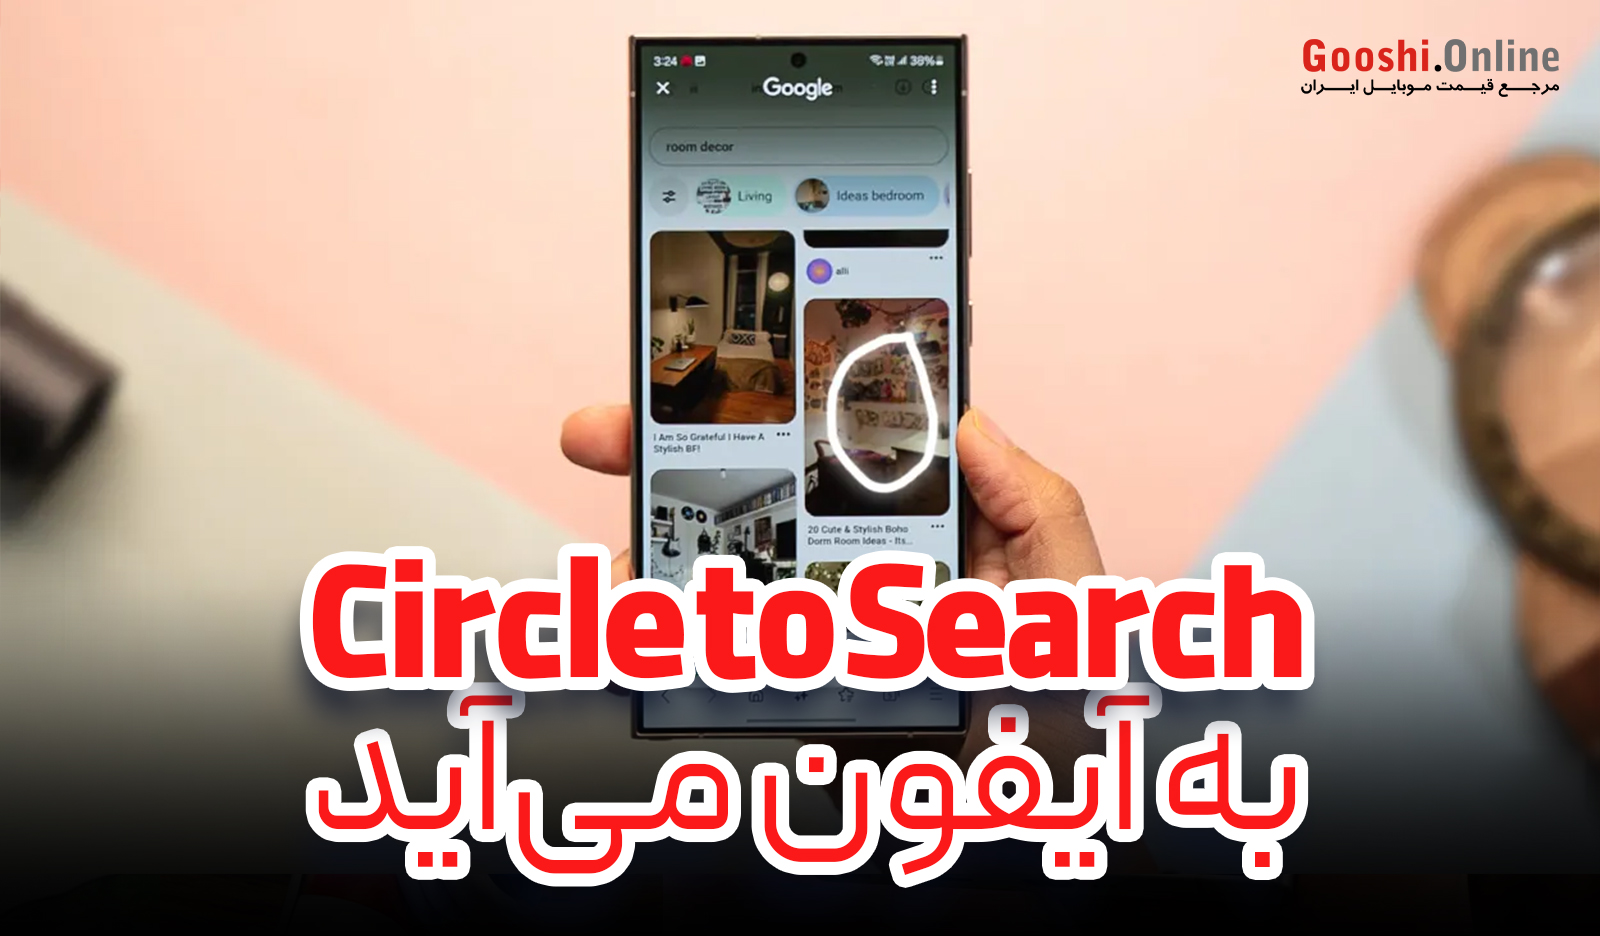 گوگل قابلیت Circle to Search را به آیفون می‌آورد